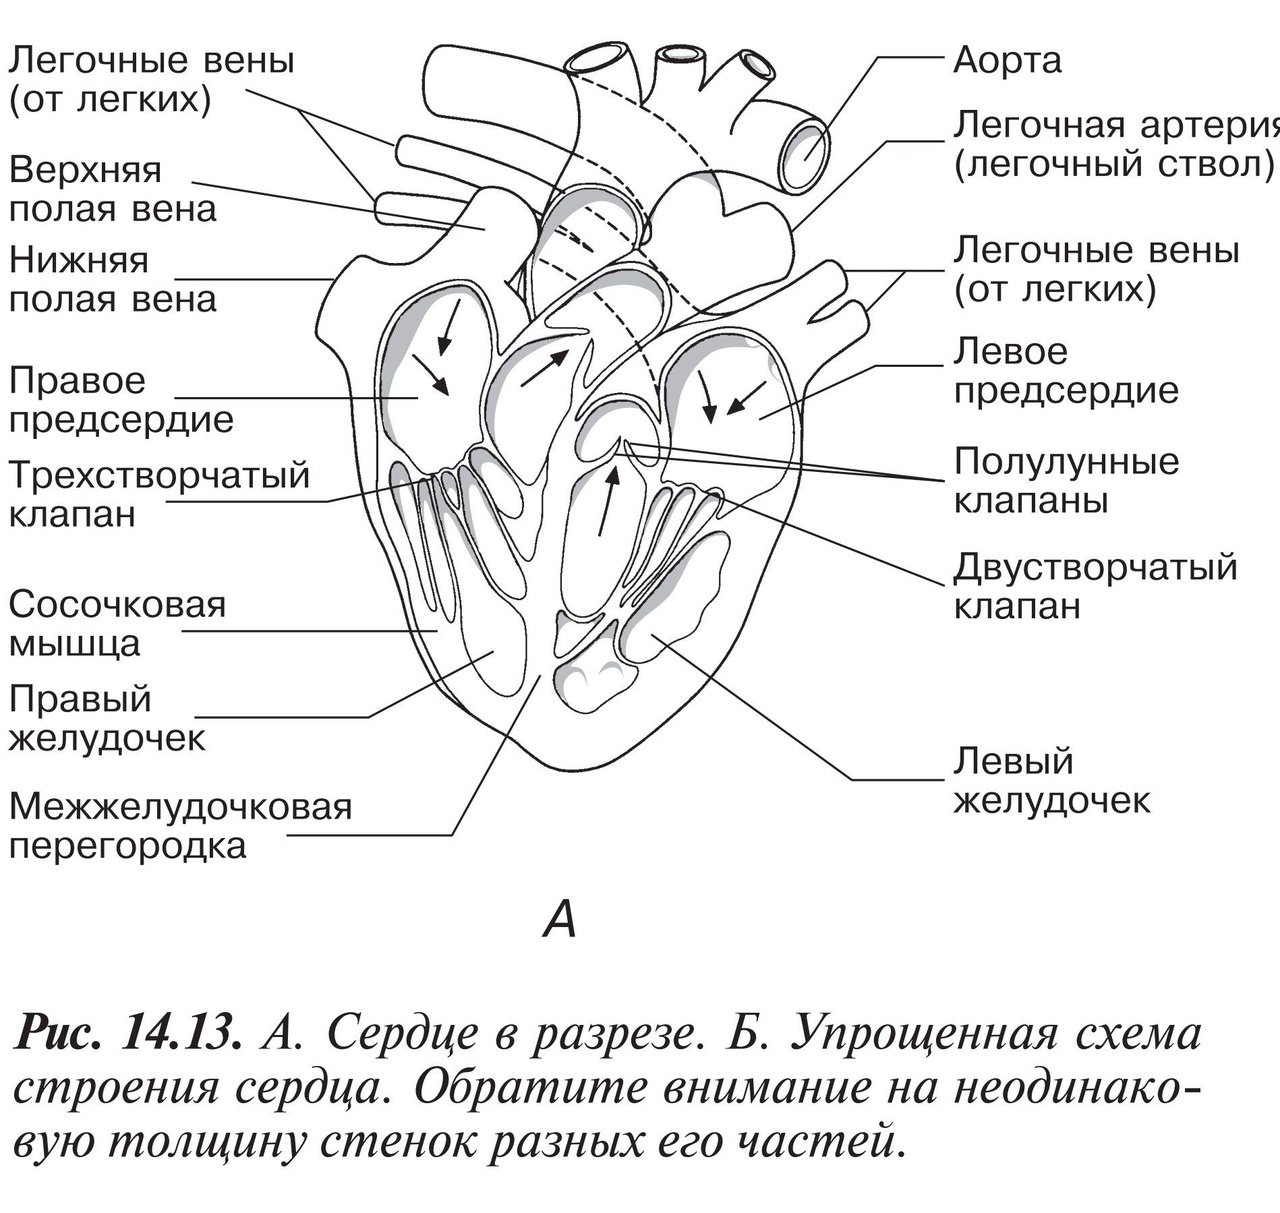 Капилляр щитовидной железы продолговатый мозг. ЕГЭ биология анатомия строение сердца. Строение сердца схема с подписями. Схема внутреннего строения сердца. Строение сердца человека рисунок.